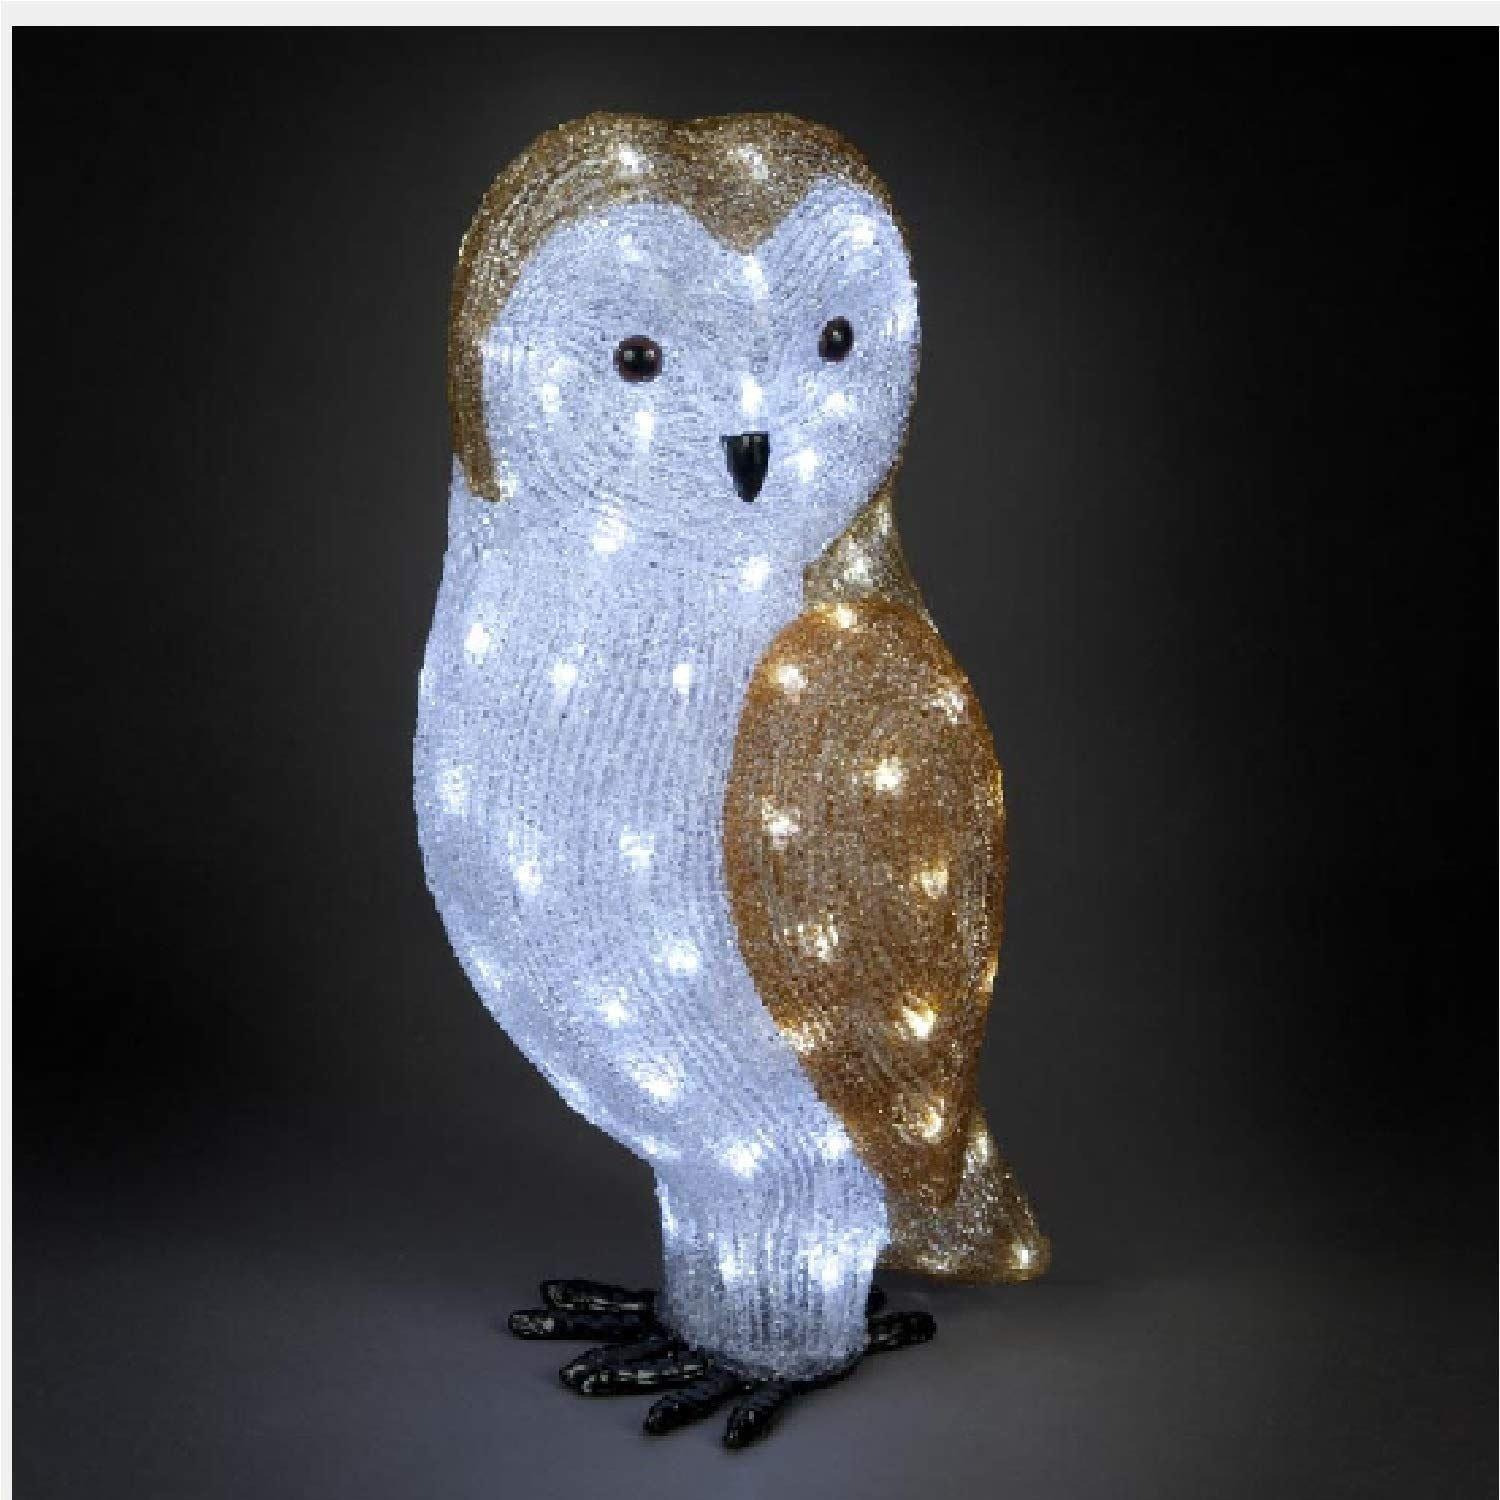 56cm Acrylic Owl With 100 Ice White LEDs - image 1